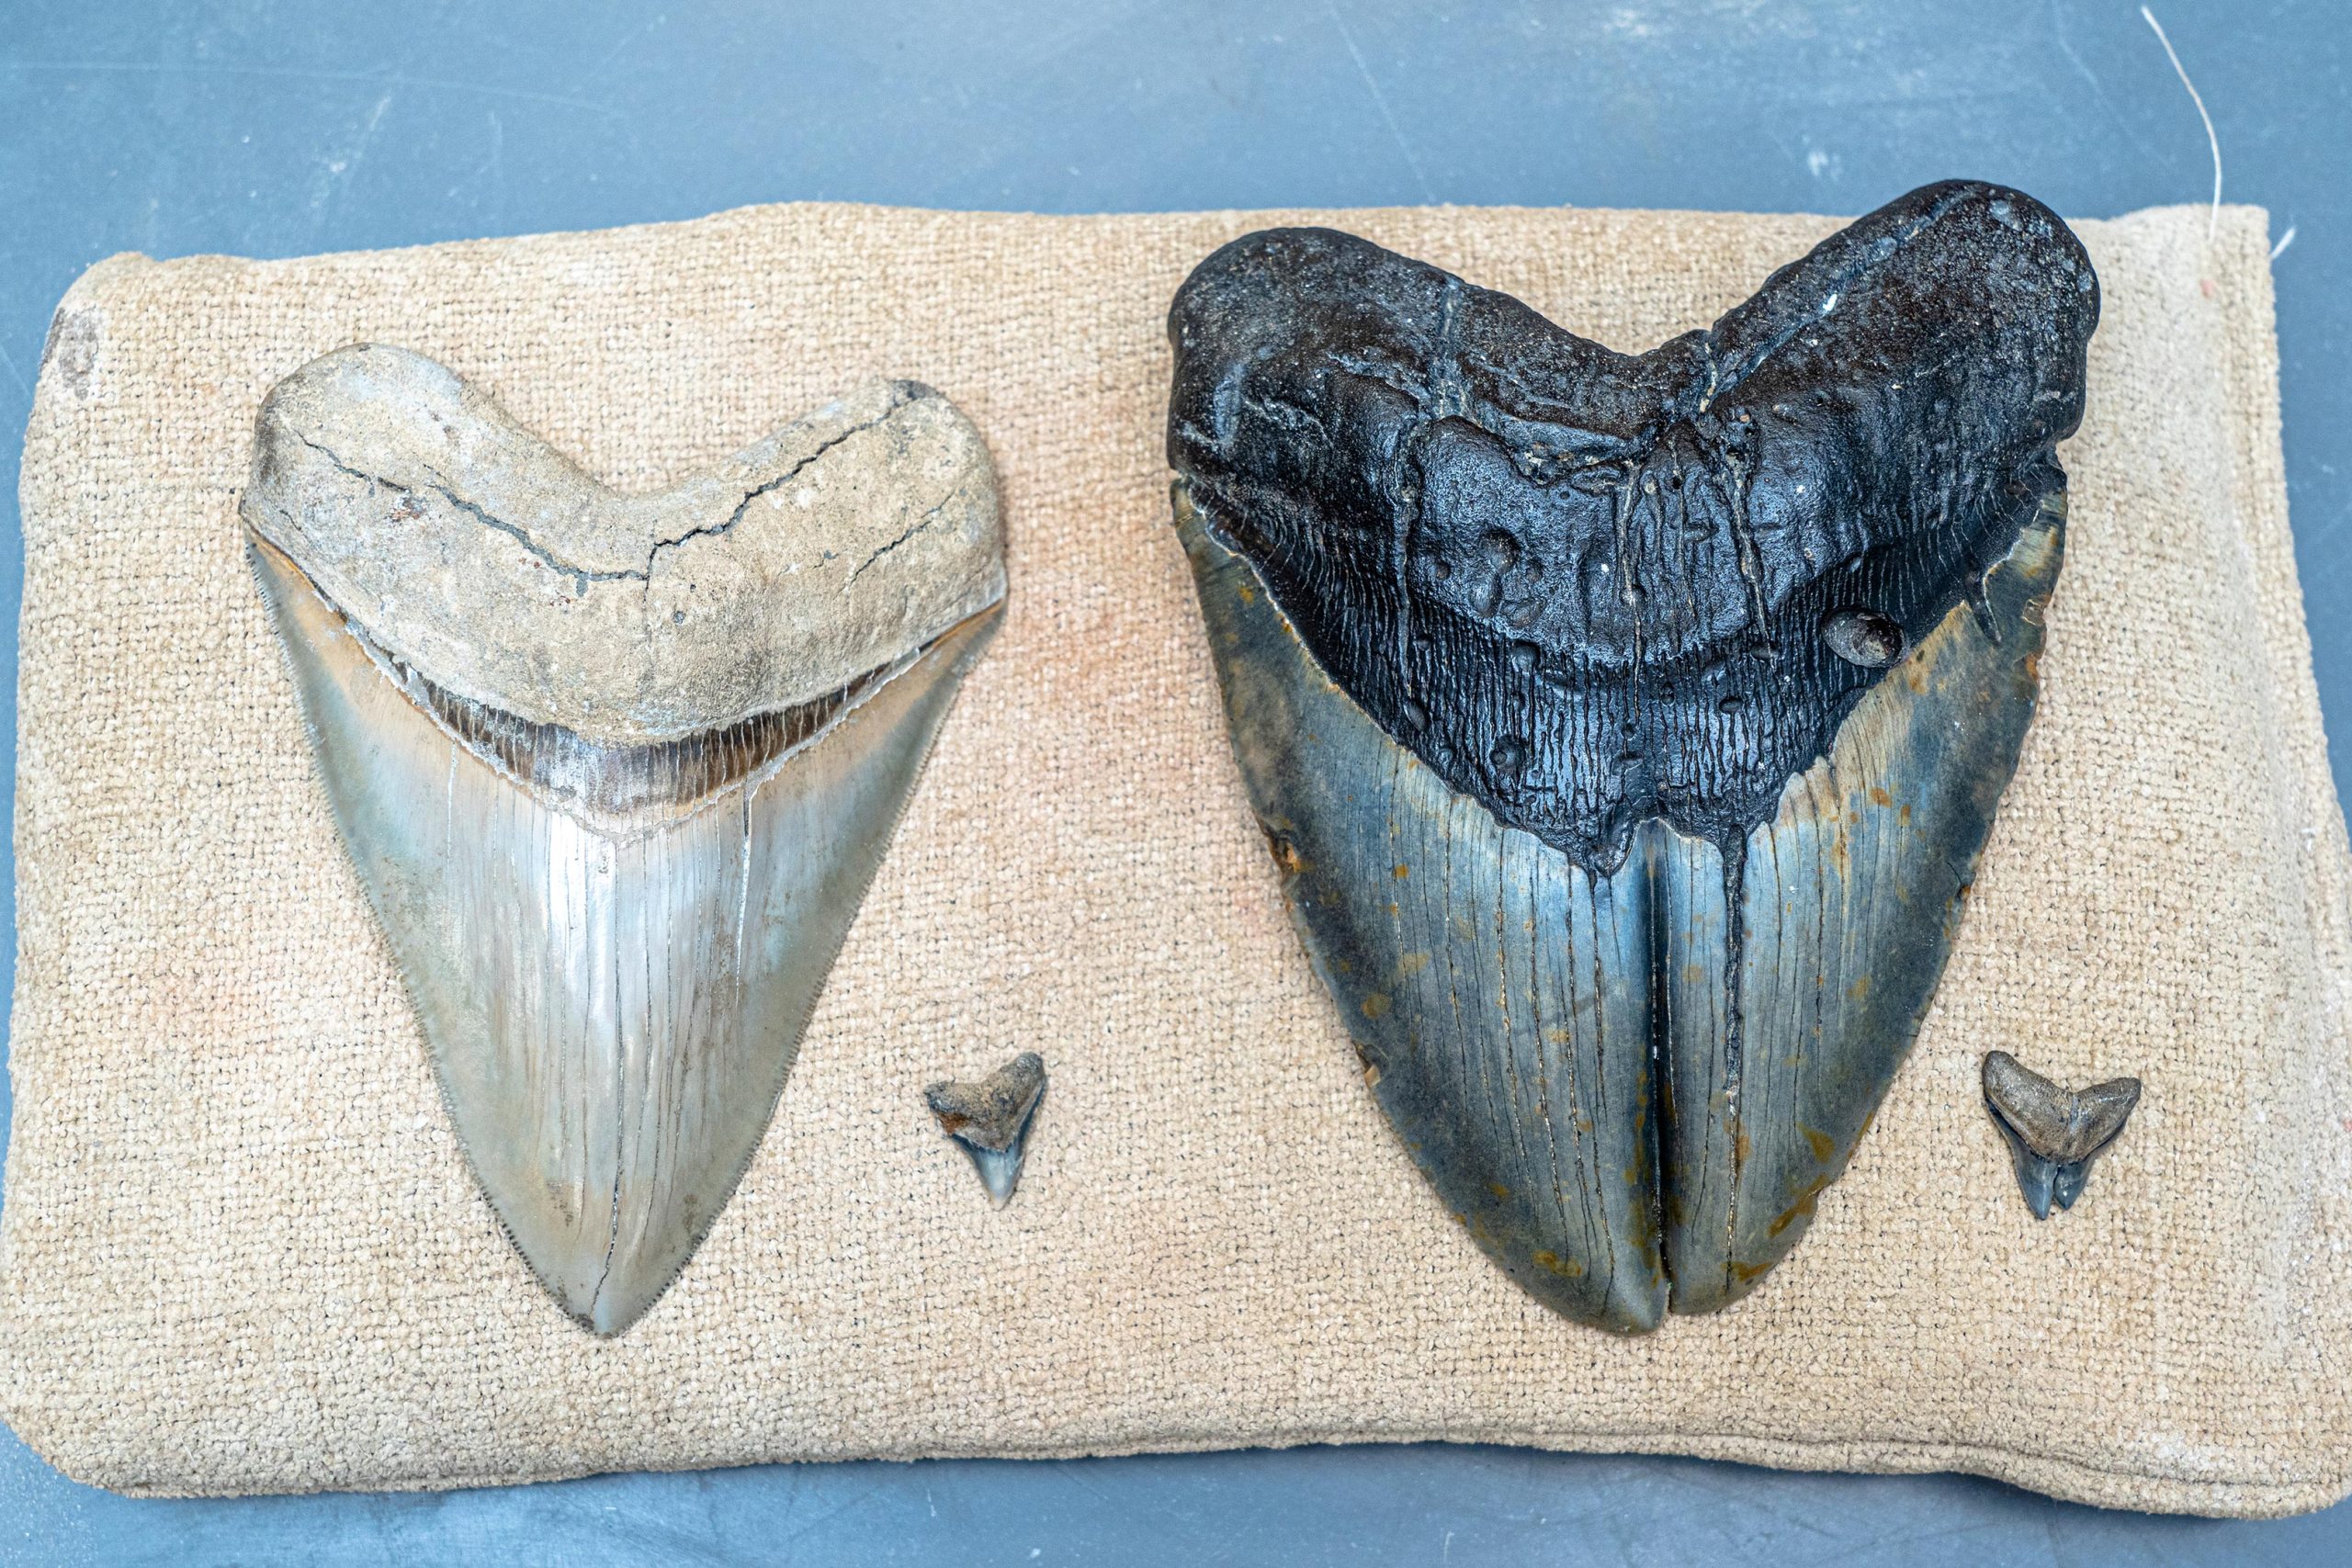 错误的狩猎或是造成巨齿鲨牙齿畸形的原因